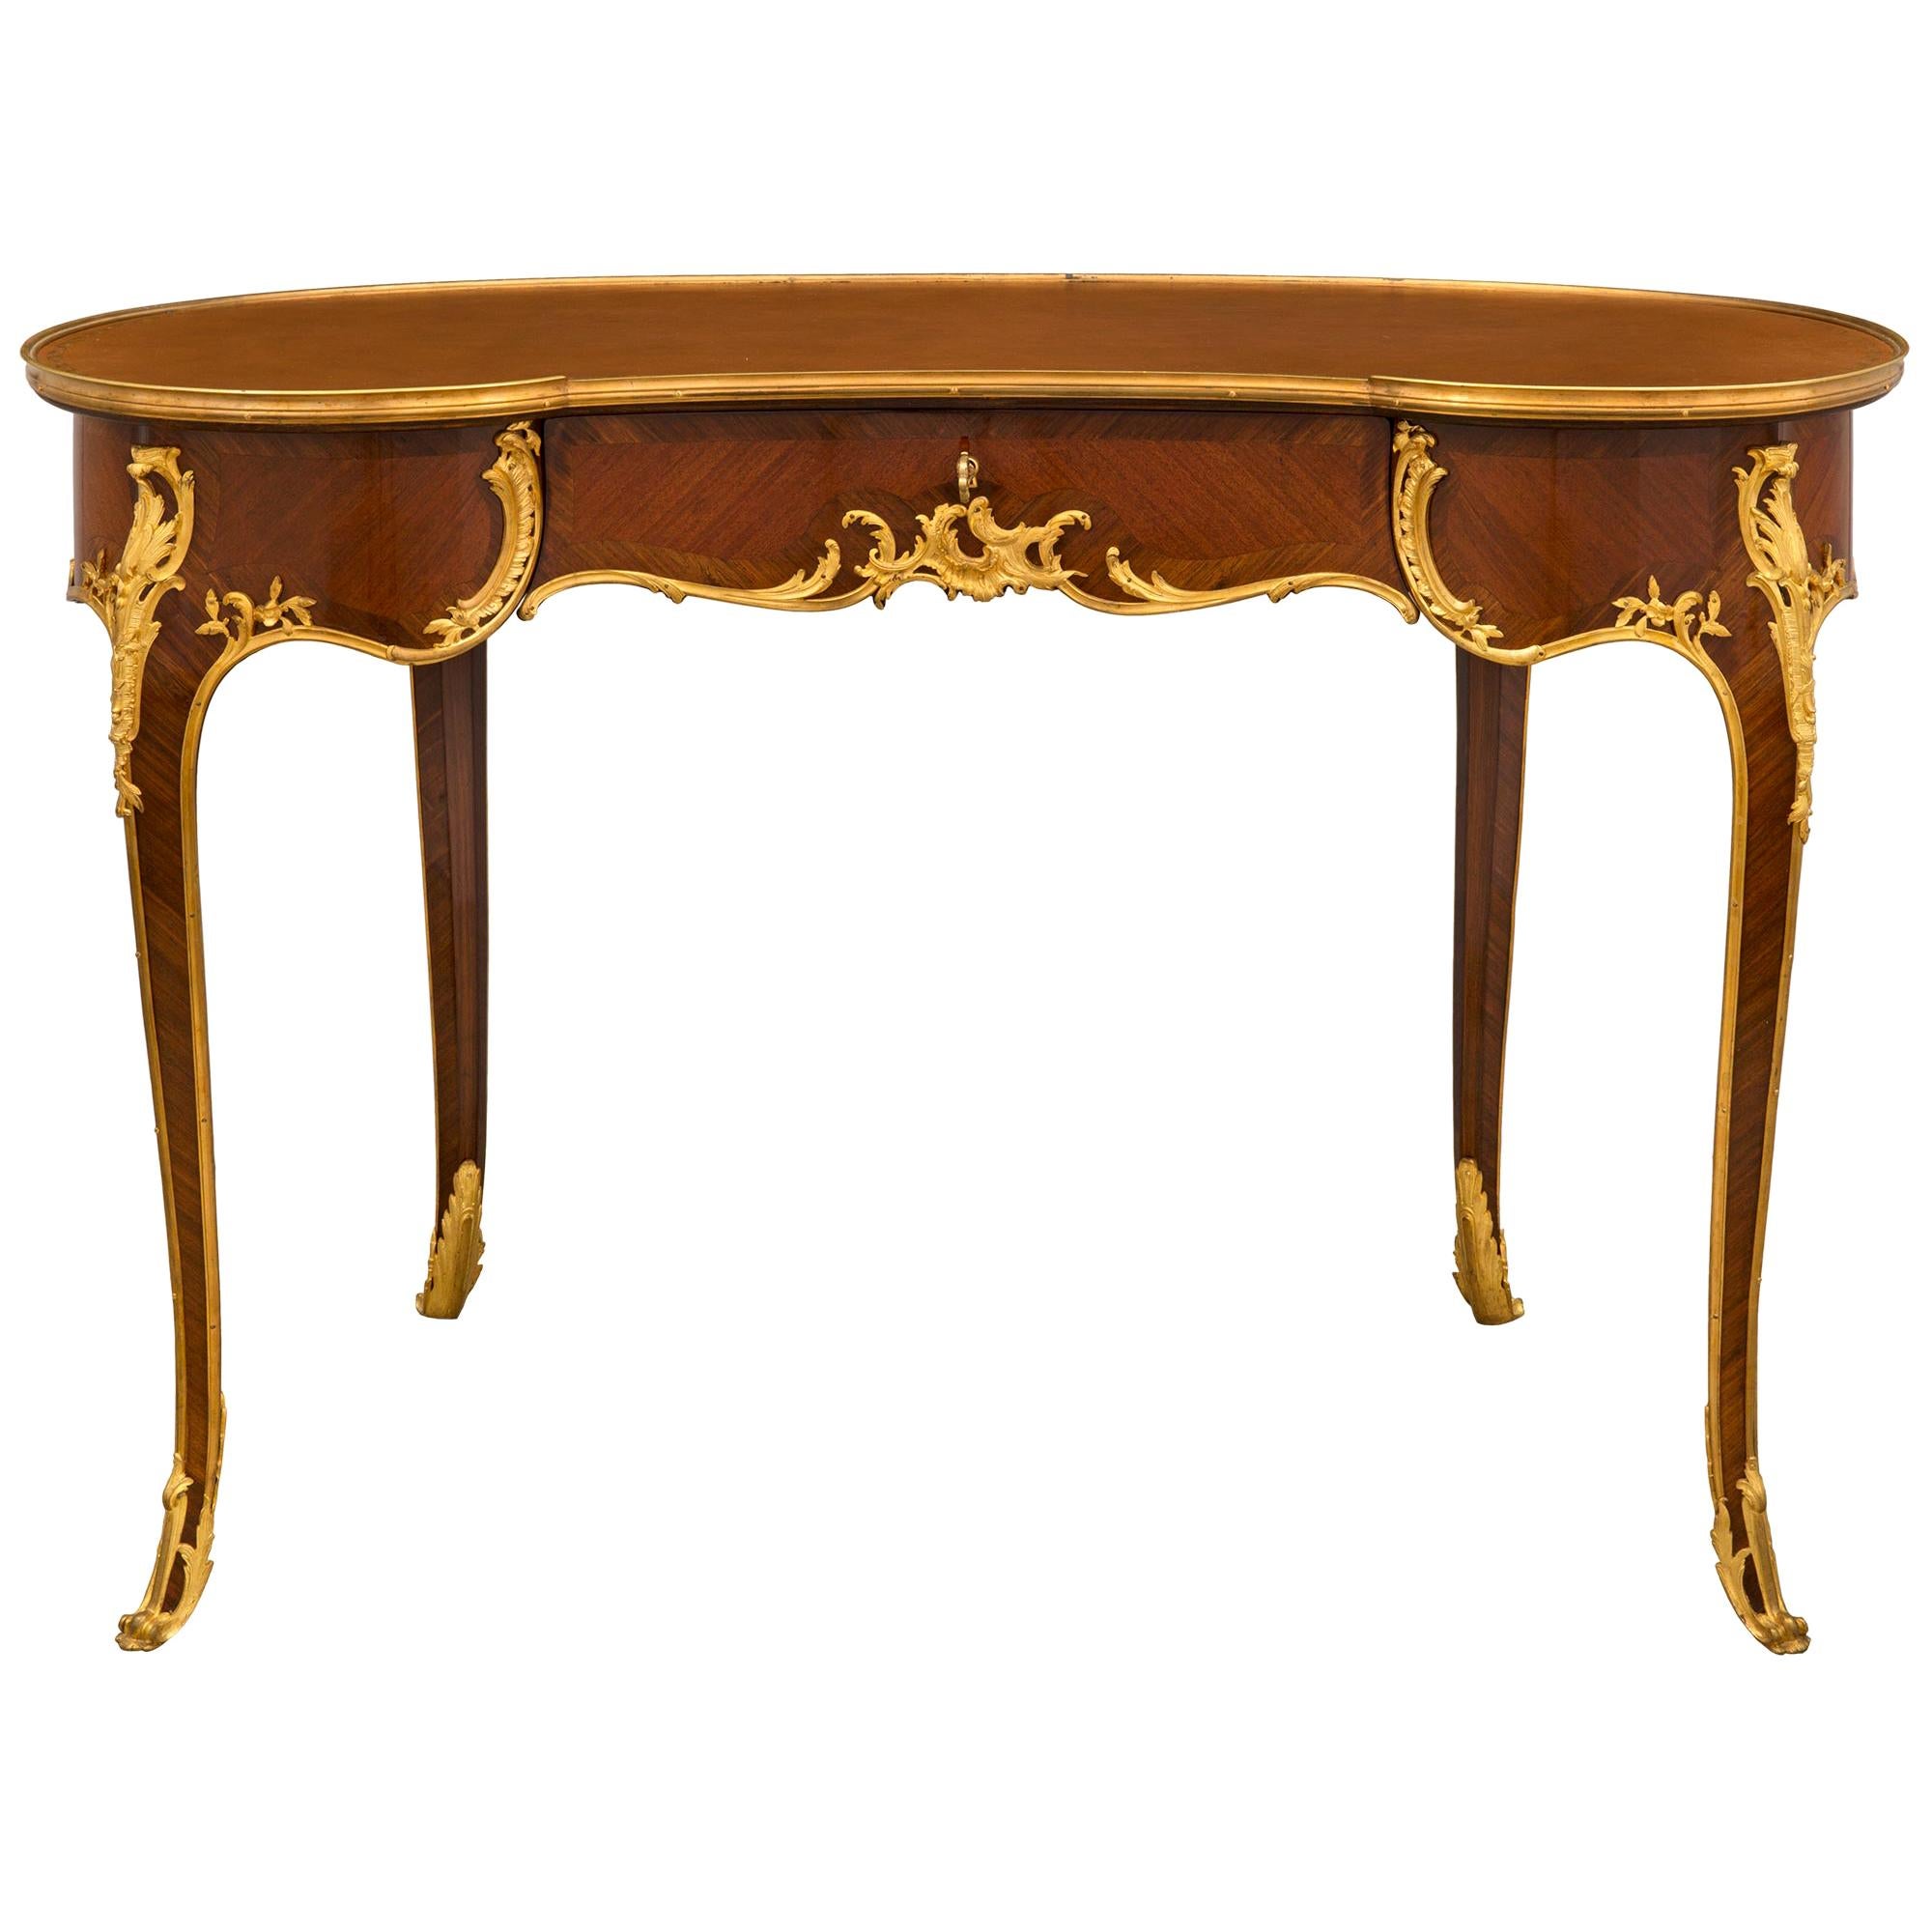 Schreibtisch aus Veilchenholz und Goldbronze im Louis-XV-Stil des 19. Jahrhunderts, Linke zugeschrieben